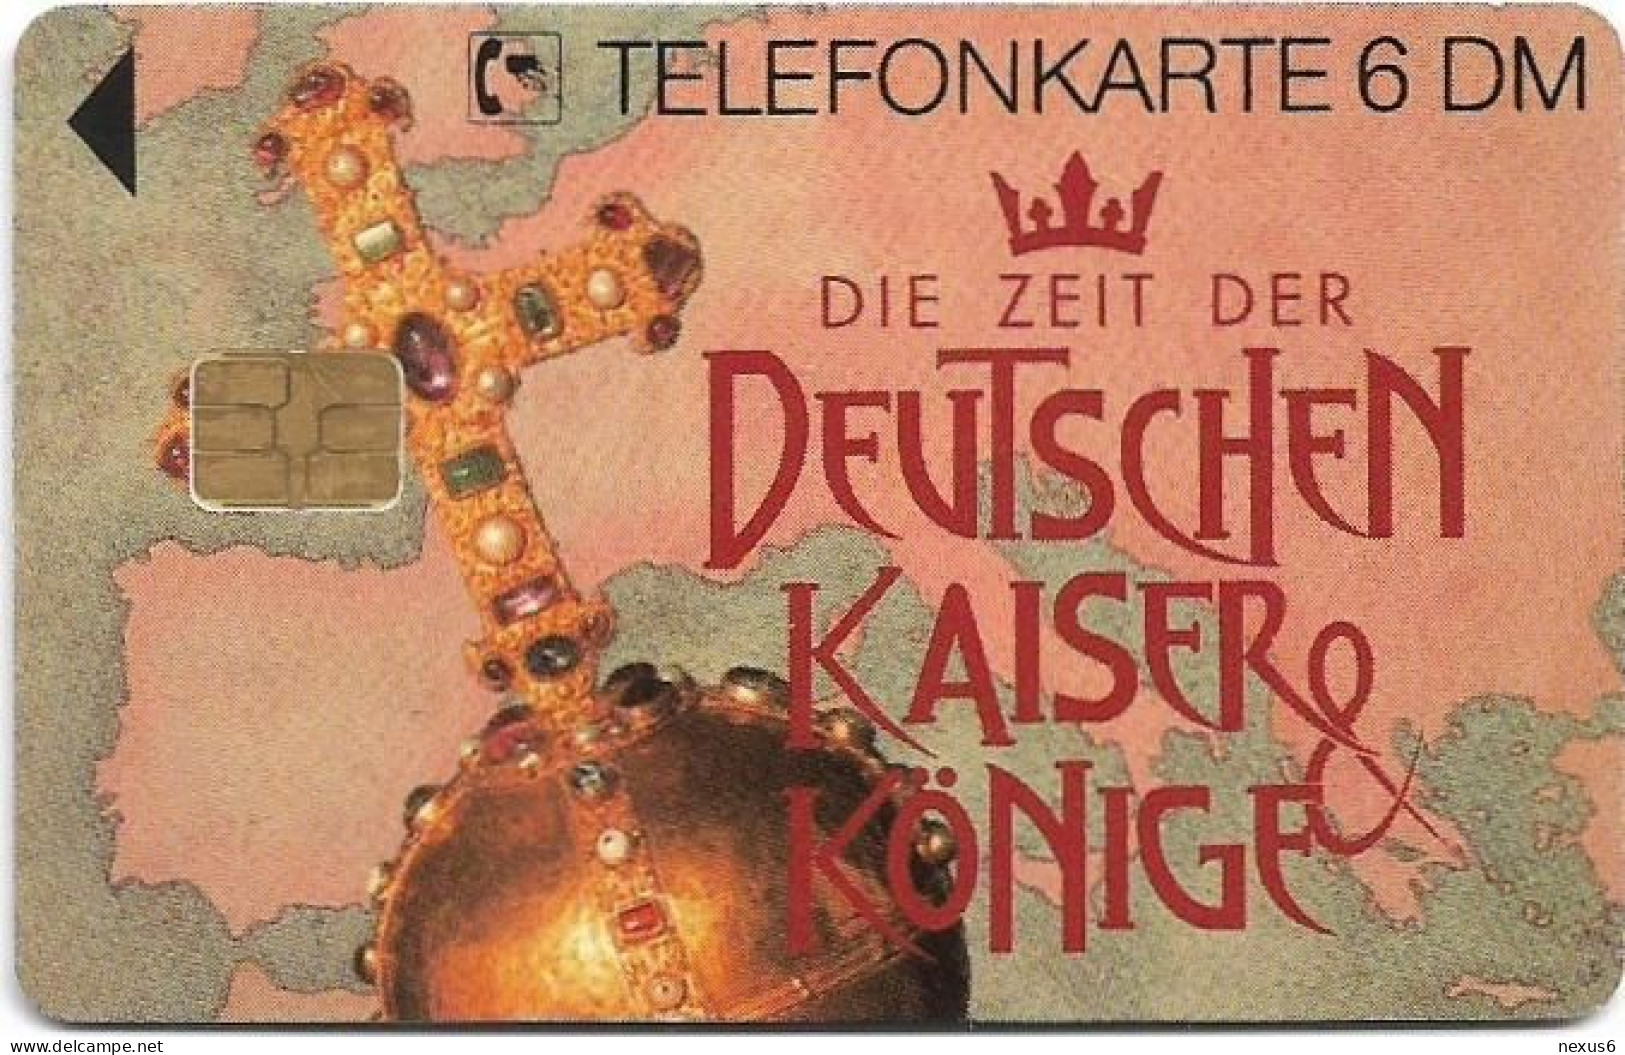 Germany - Deutschen Kaiser & Könige - Maximilian I - O 0295B - 09.1993, 6DM, 5.000ex, Used - O-Series: Kundenserie Vom Sammlerservice Ausgeschlossen